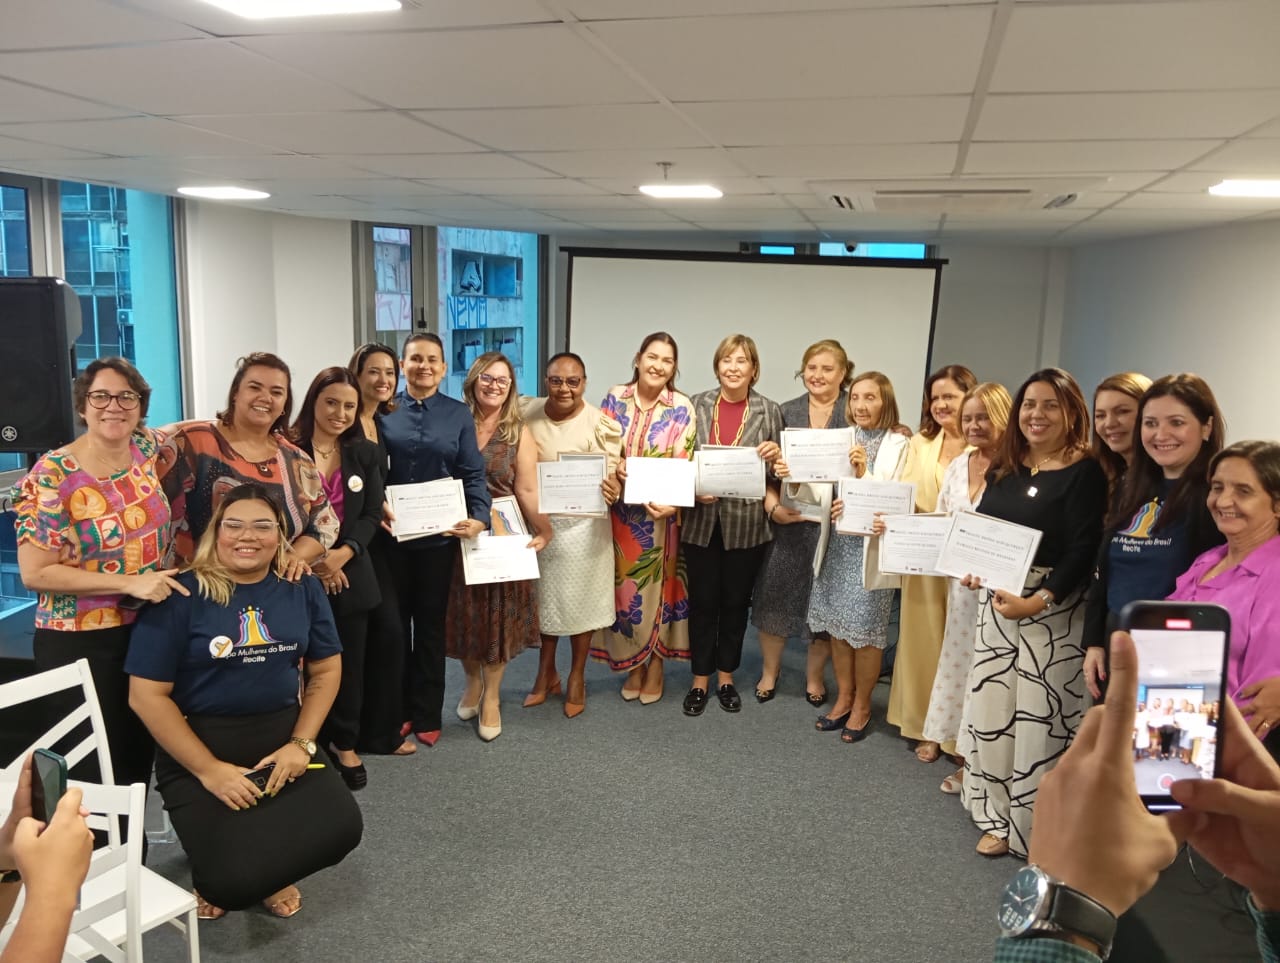  Chá da Tarde: Mais Mulheres no Poder – Troféu Brites Albuquerque reconhece lideranças políticas femininas em Pernambuco